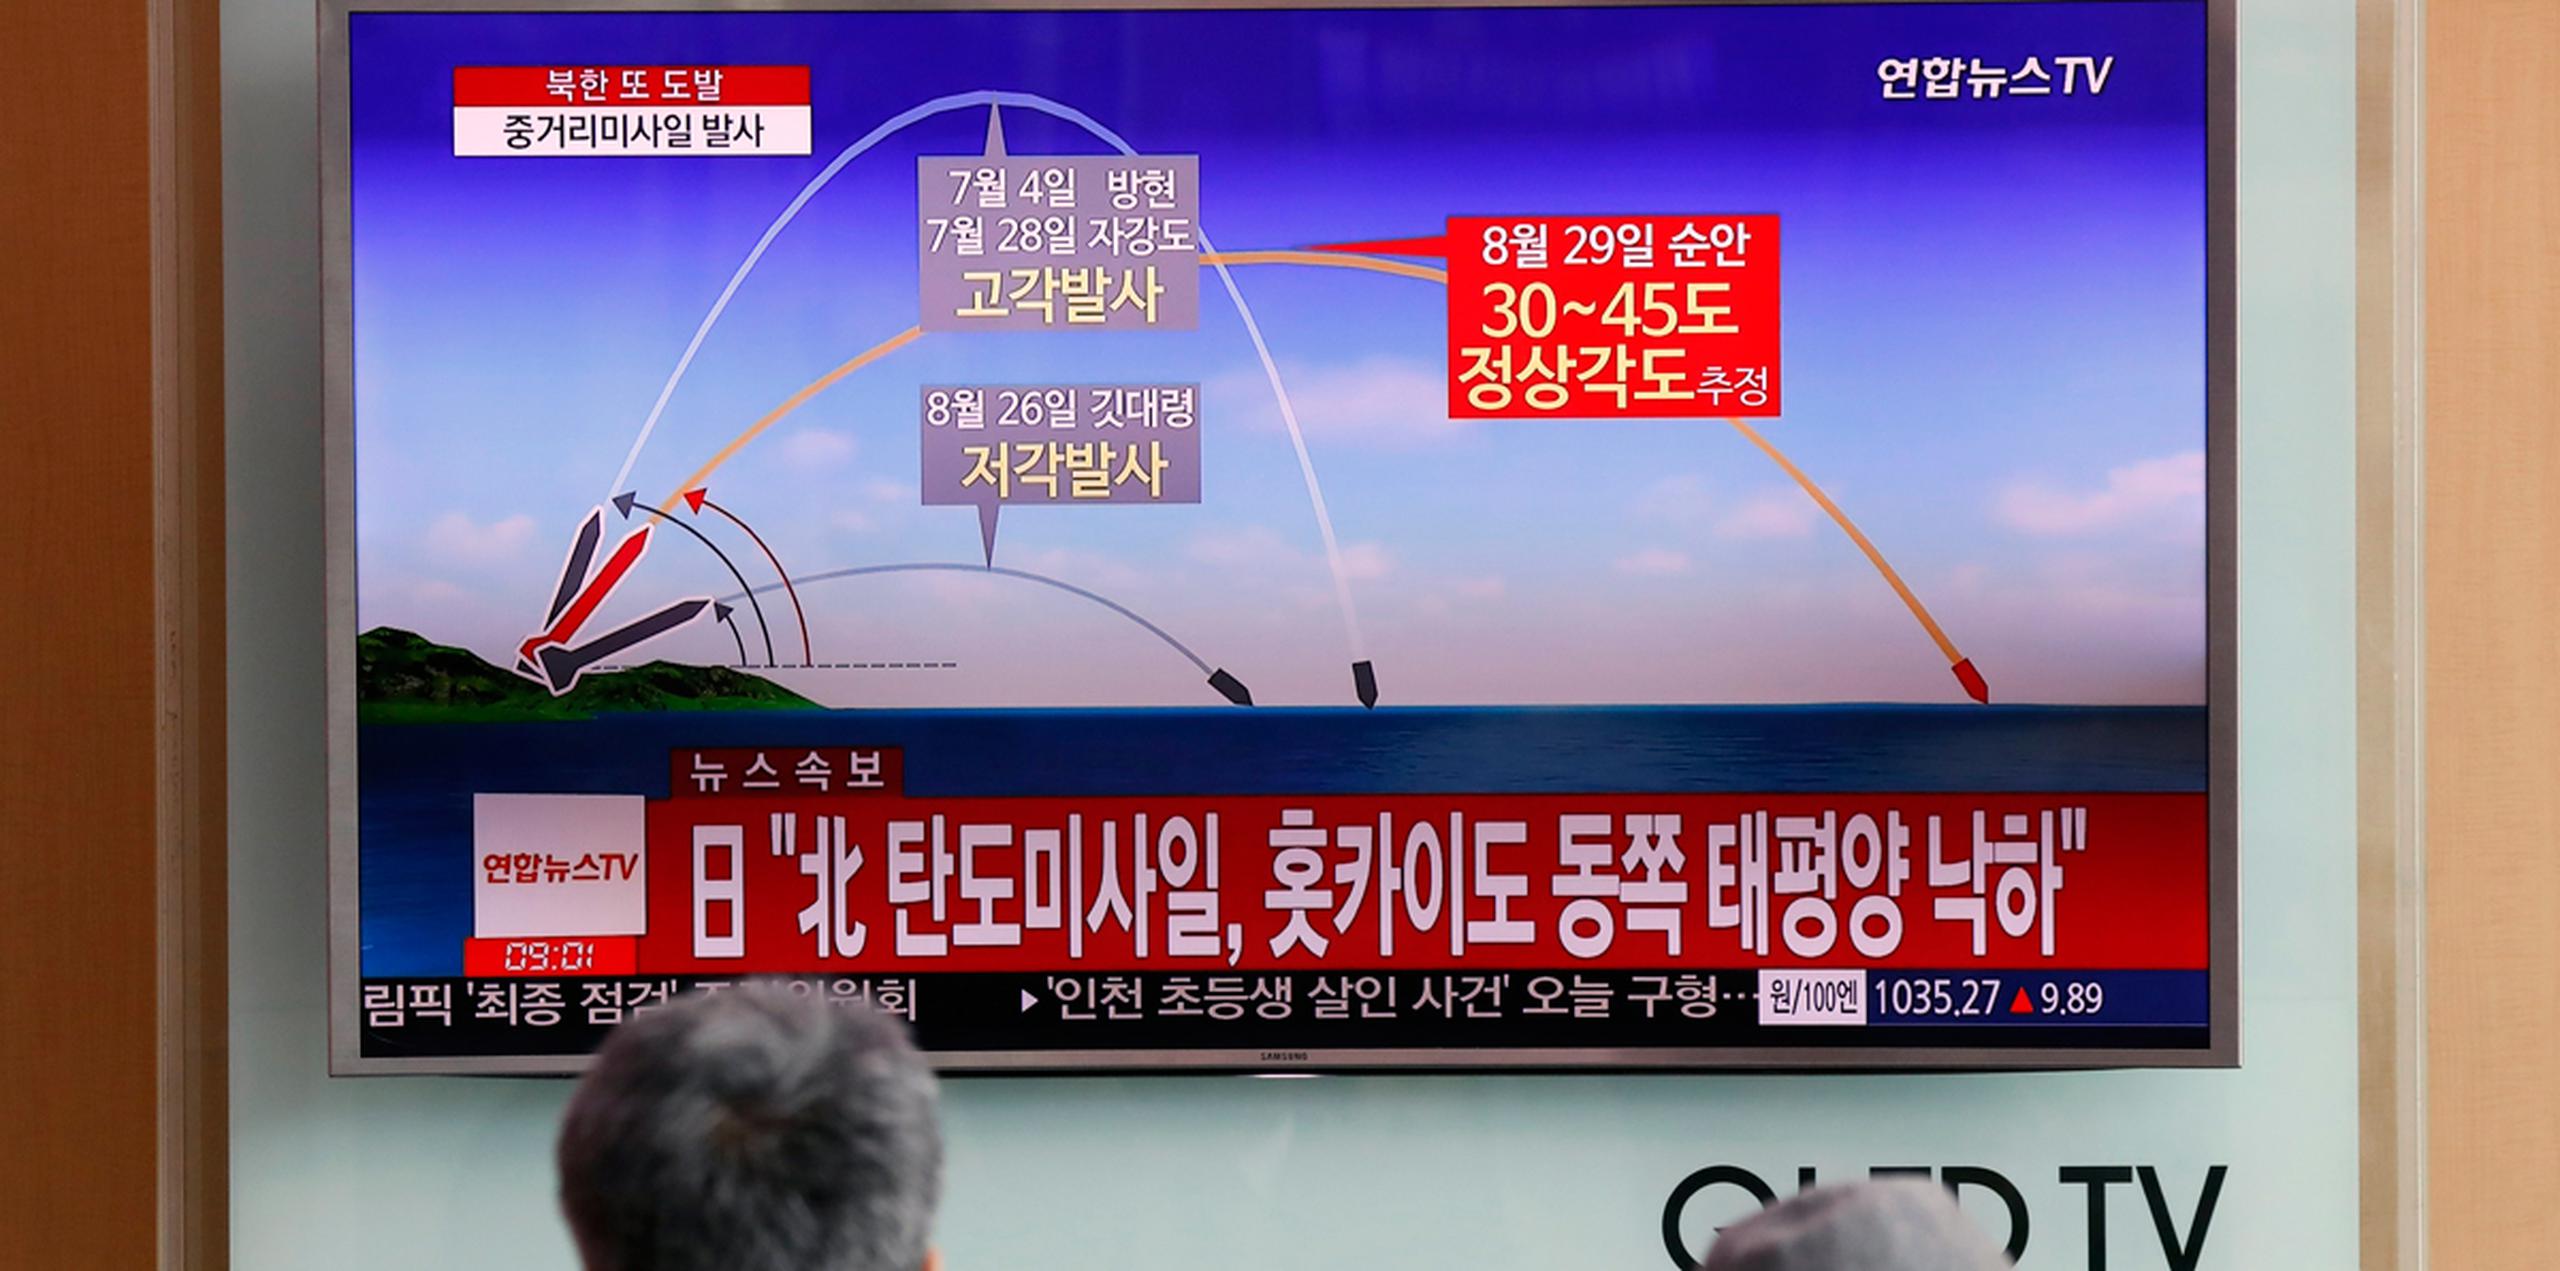 Ciudadanos surcoreanos miran una televisión que exhibe las noticias que divulgan sobre el lanzamiento más reciente de misiles balísticos de Corea del Norte. (EFE)